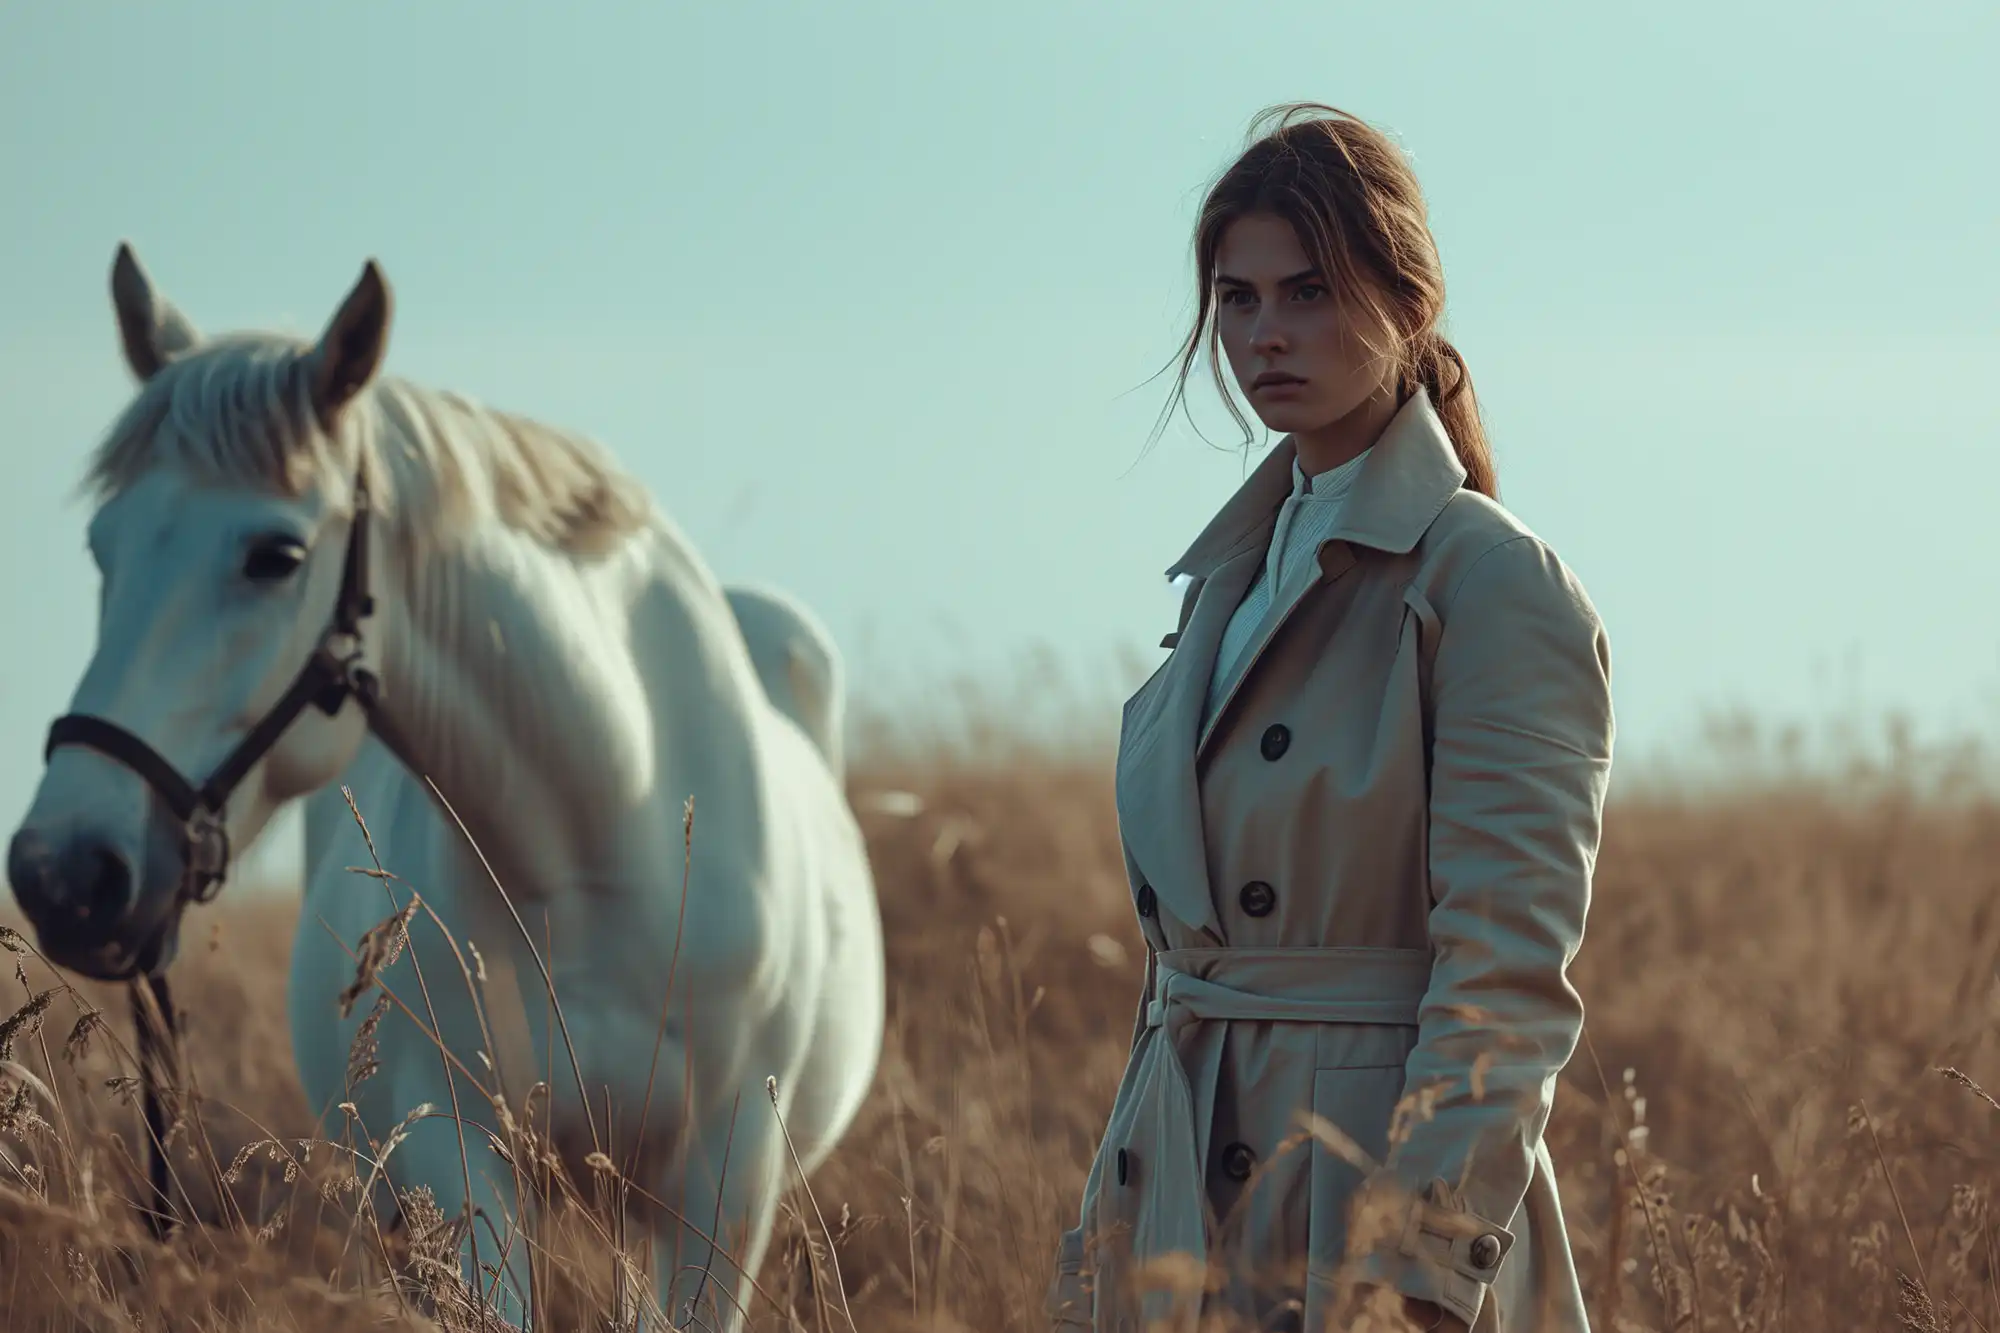 image d'illustration, marketing visuel, photographe professionnel, une femme dans un champ avec un cheval blanc © innovated4